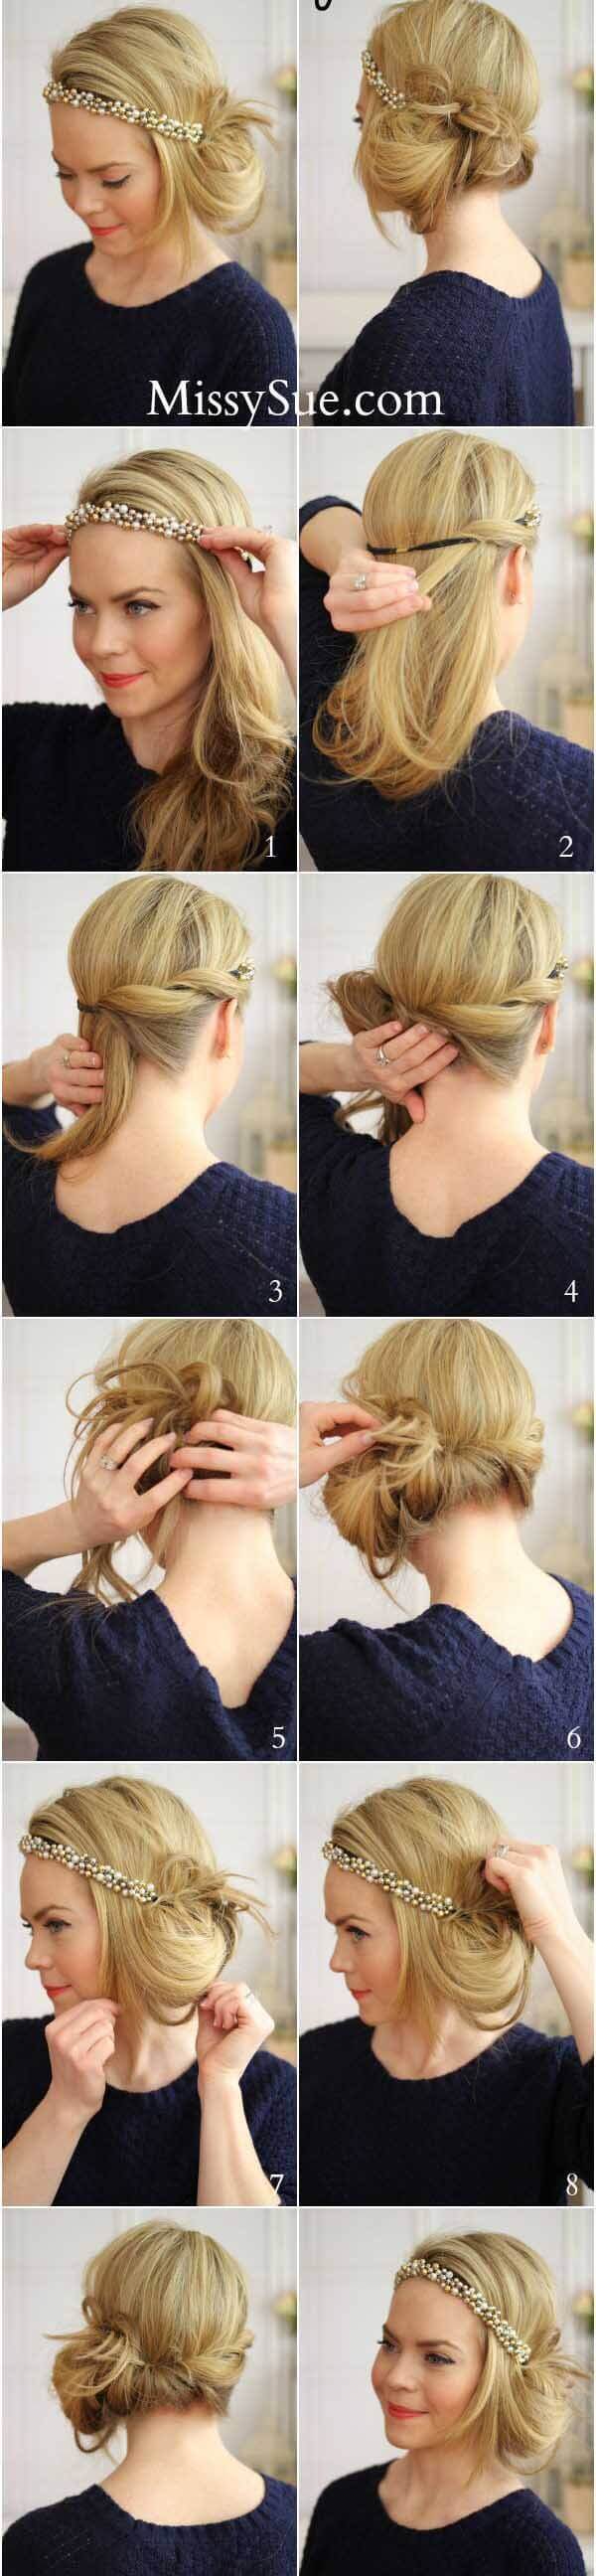 Làm điệu cho tóc bằng những bước rất đơn giản ai cũng có thể tự làm 35